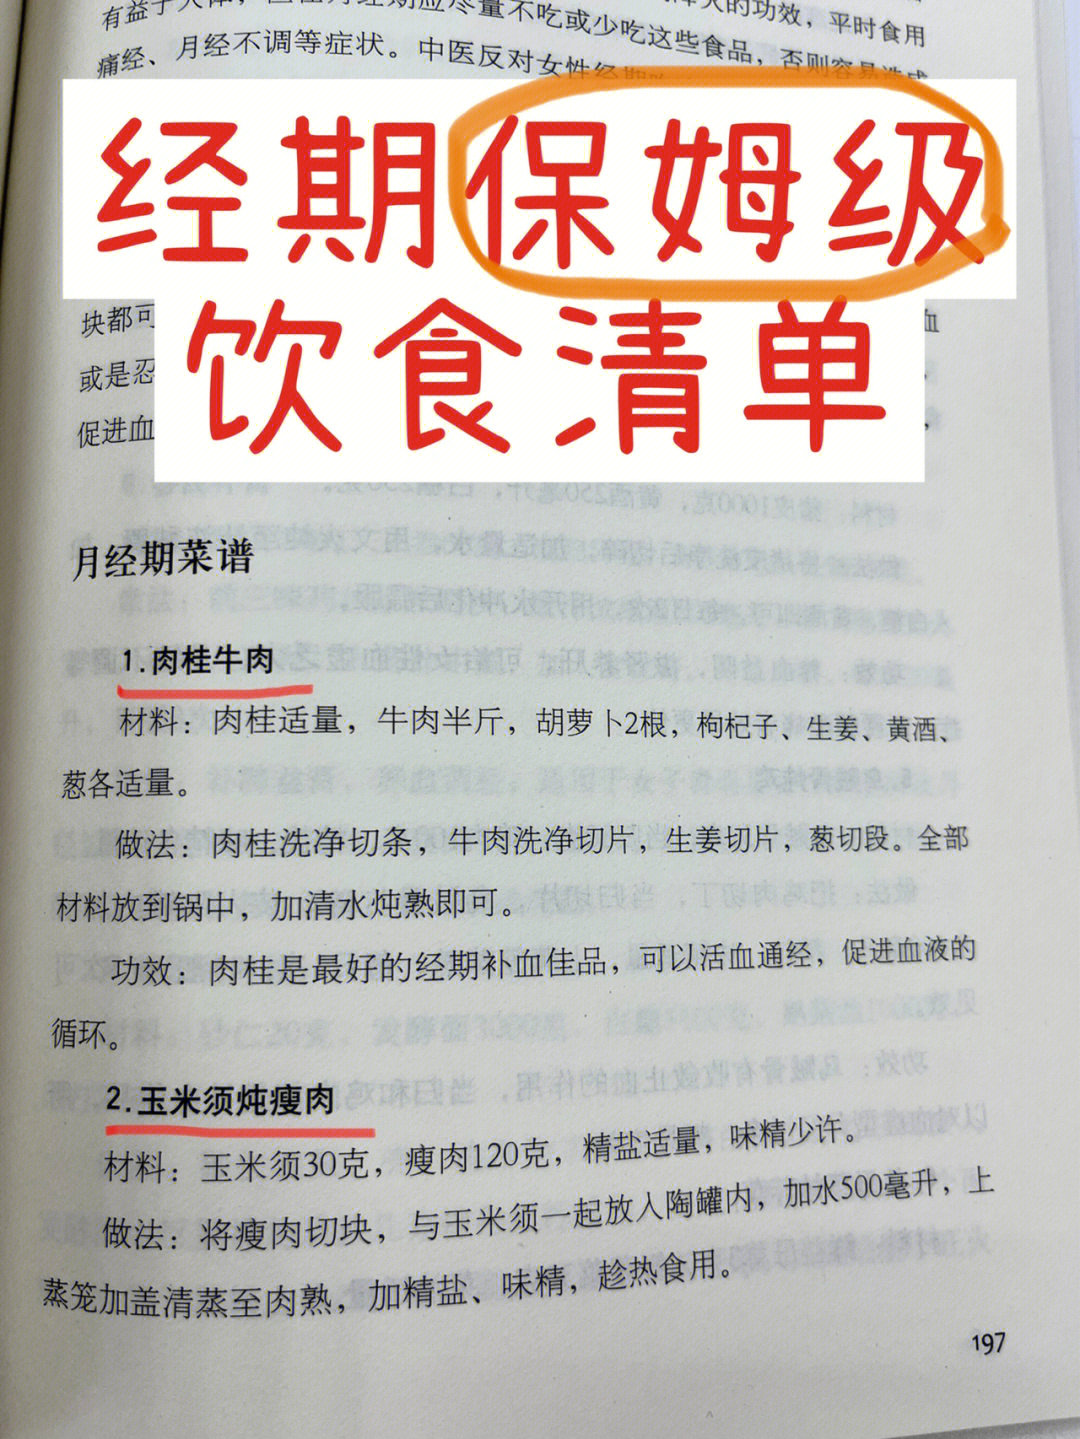 在书里看到了zui全的经期饮食清单75